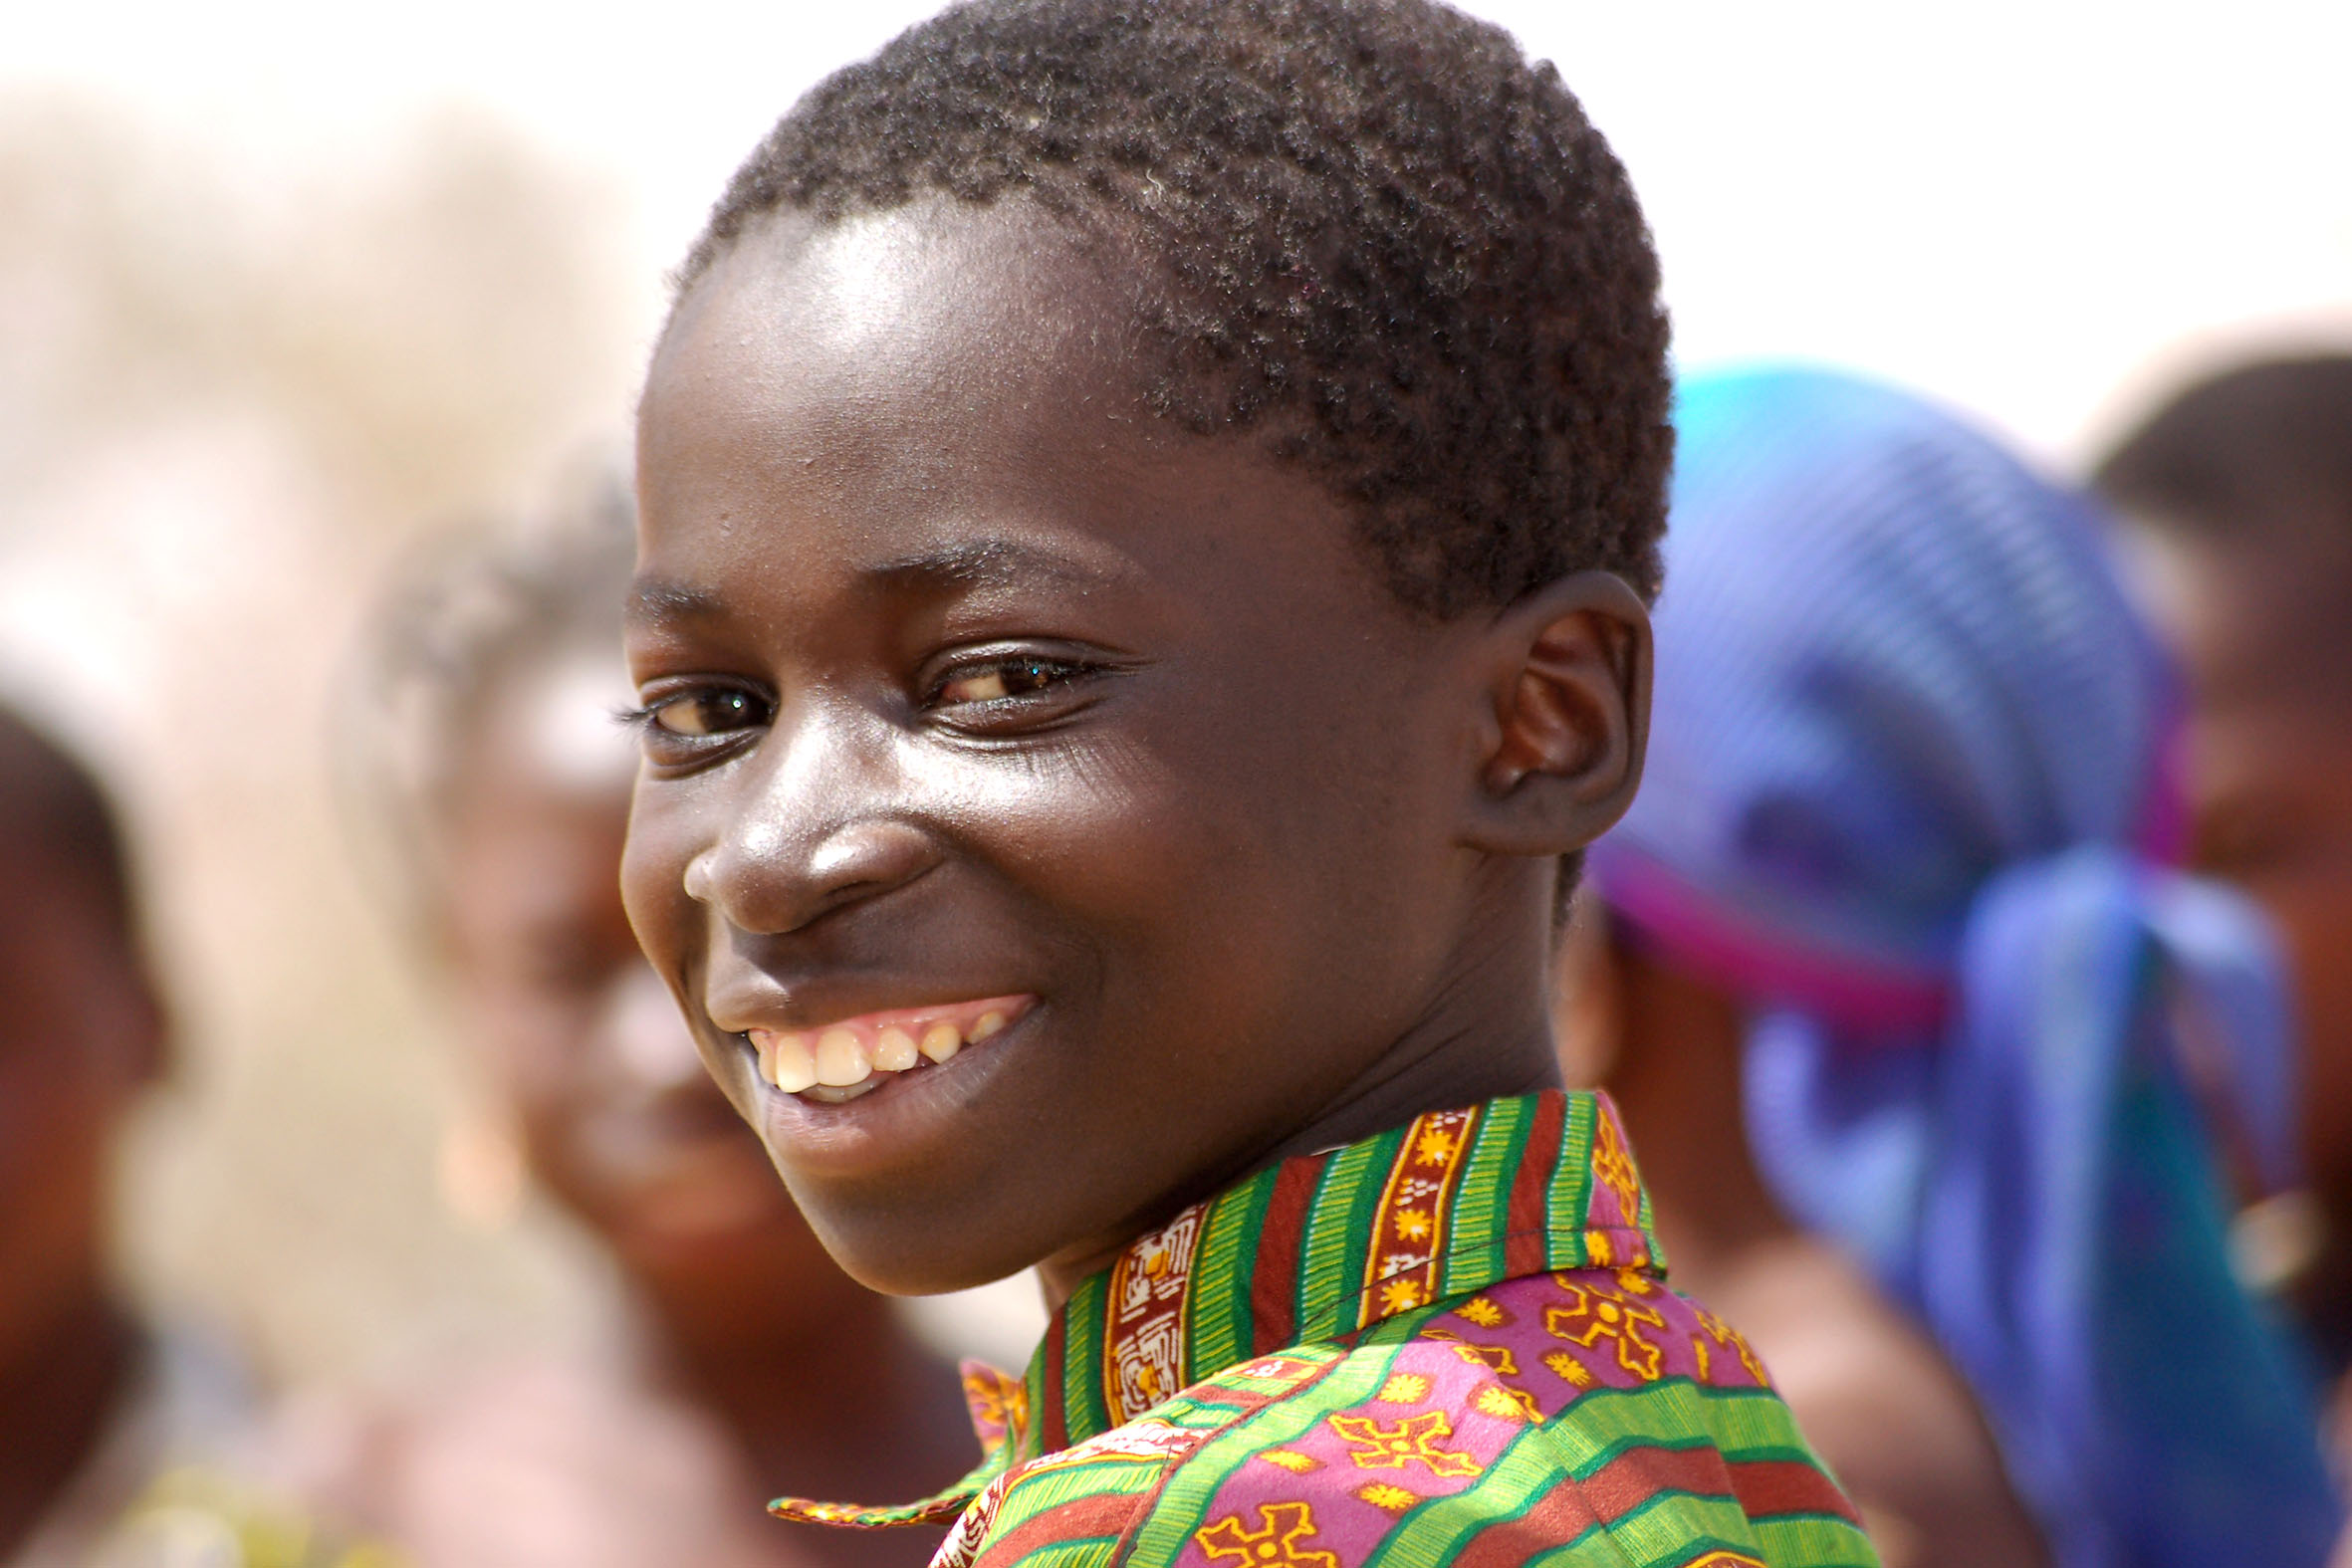 Junge in Burkina Faso, Foto von Walter Korn